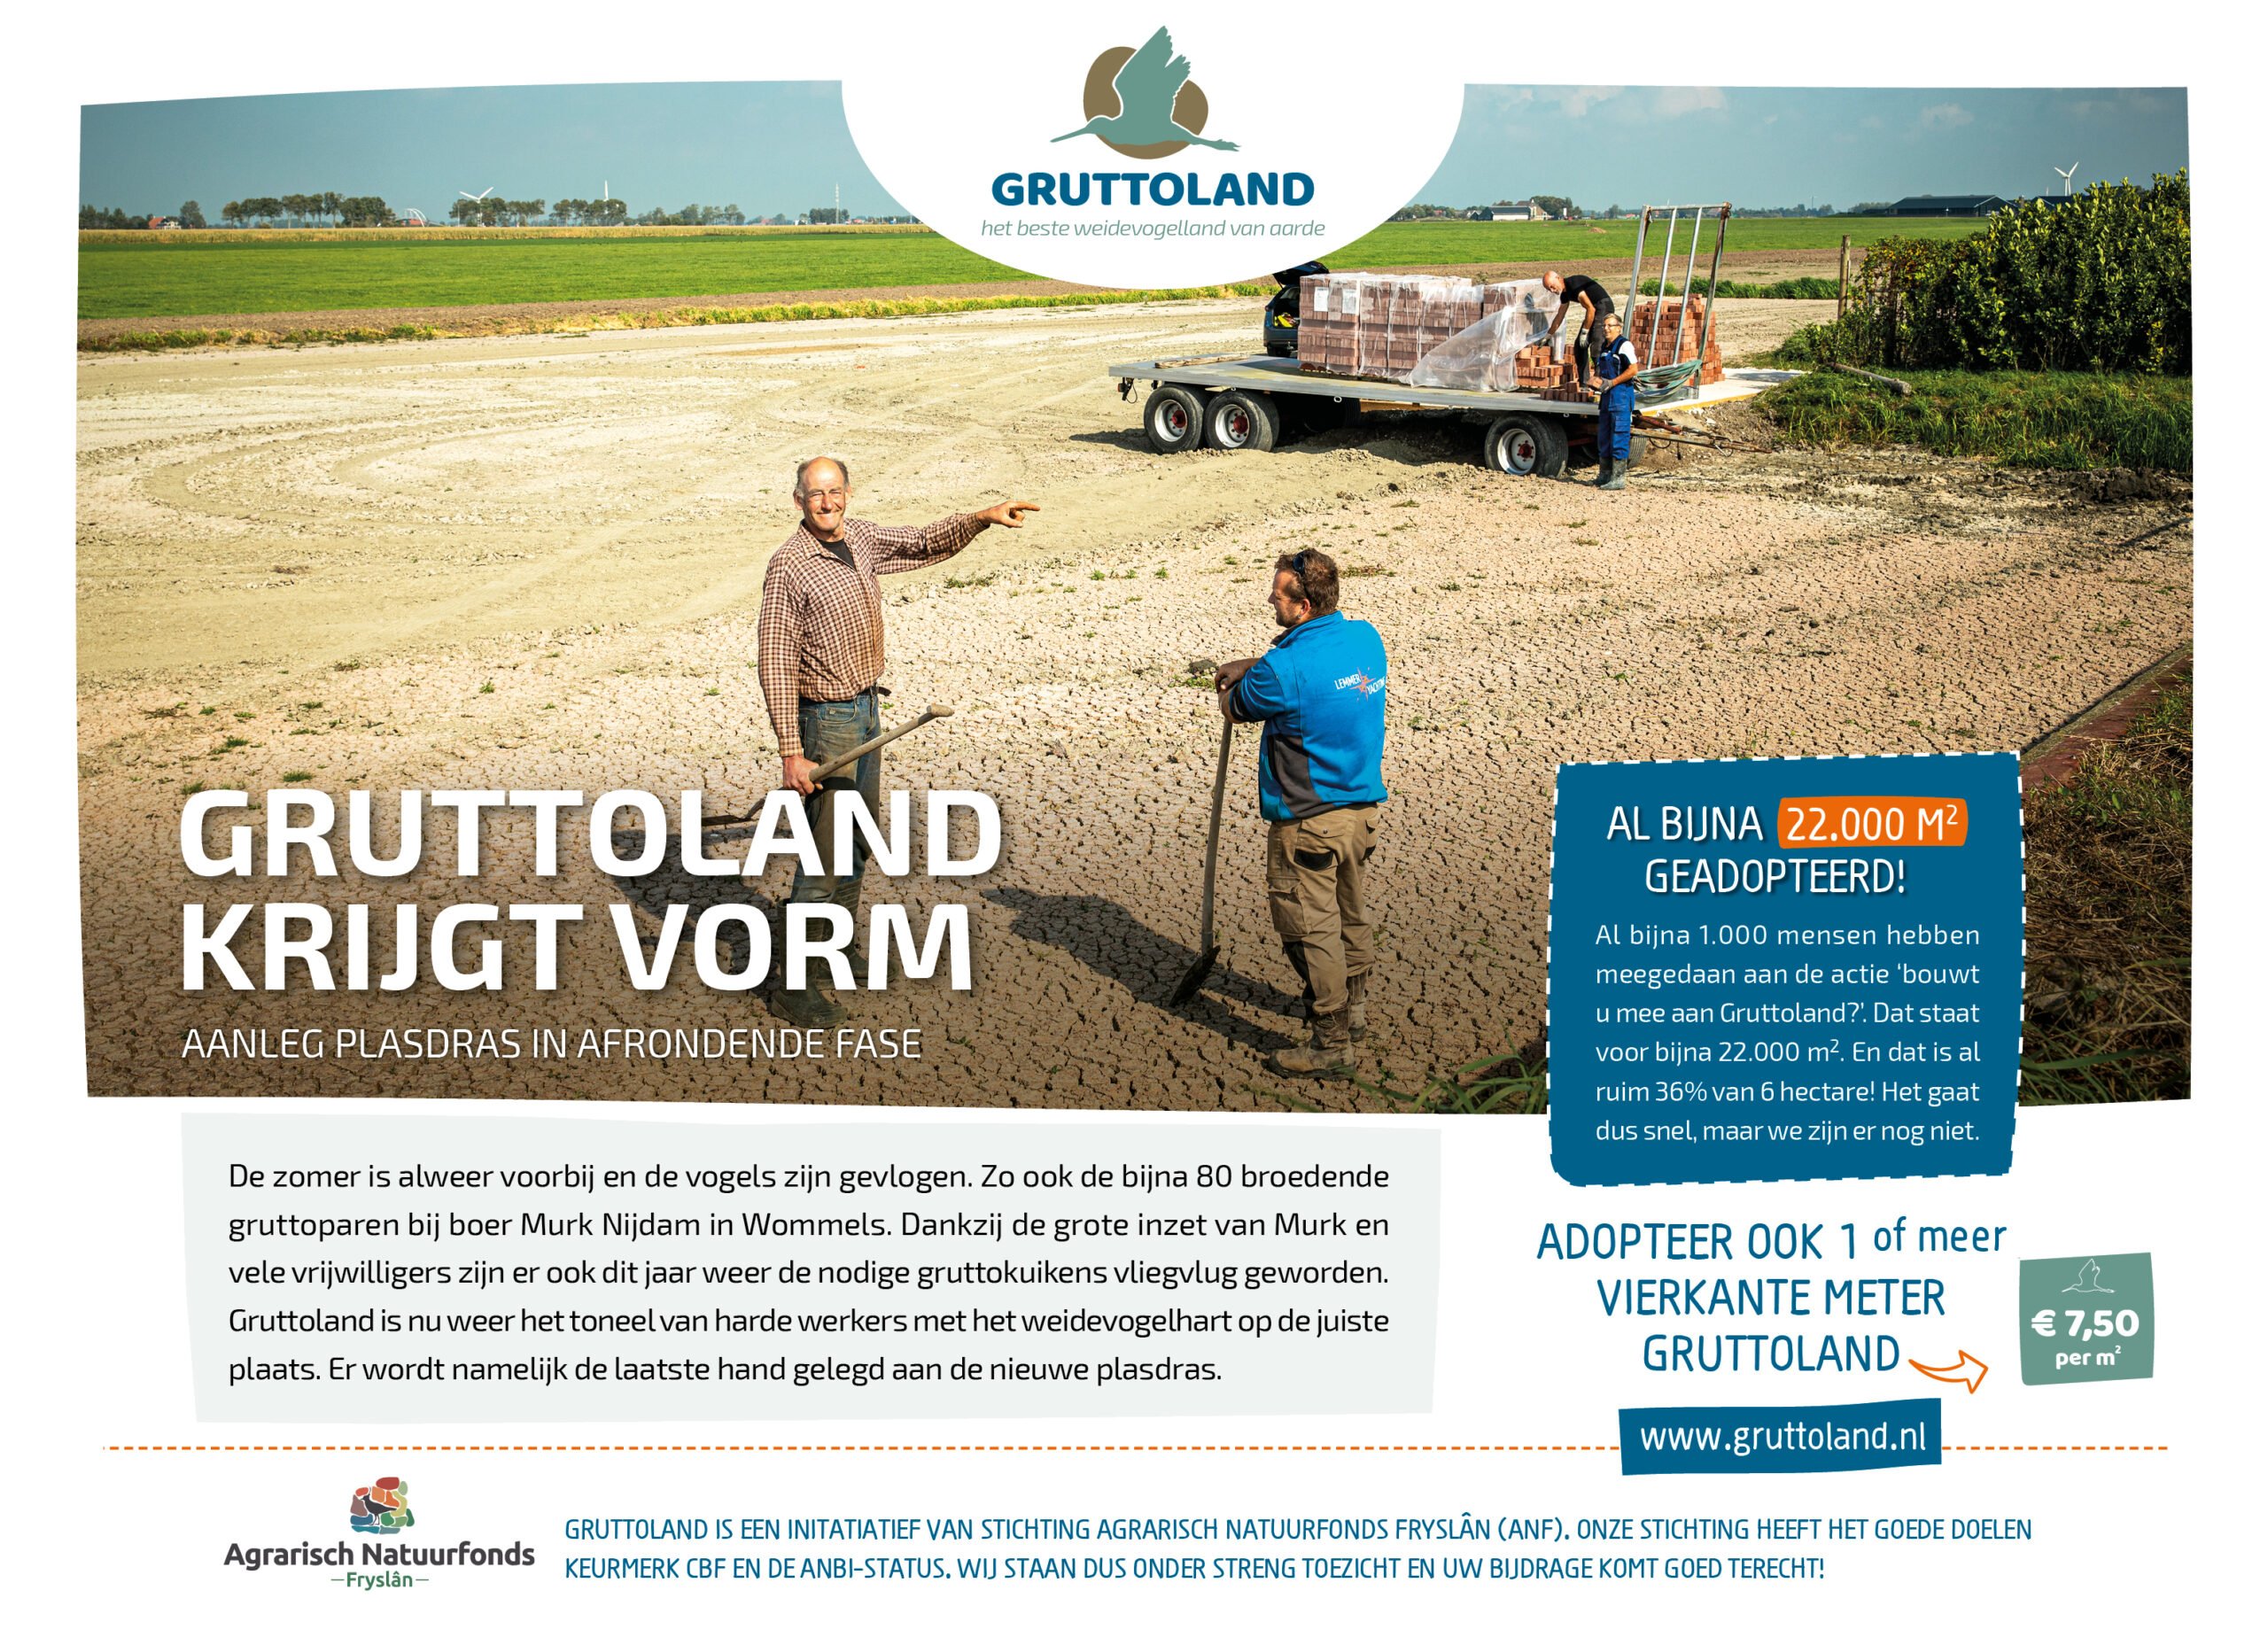 Featured image for “Gruttoland krijgt vorm”